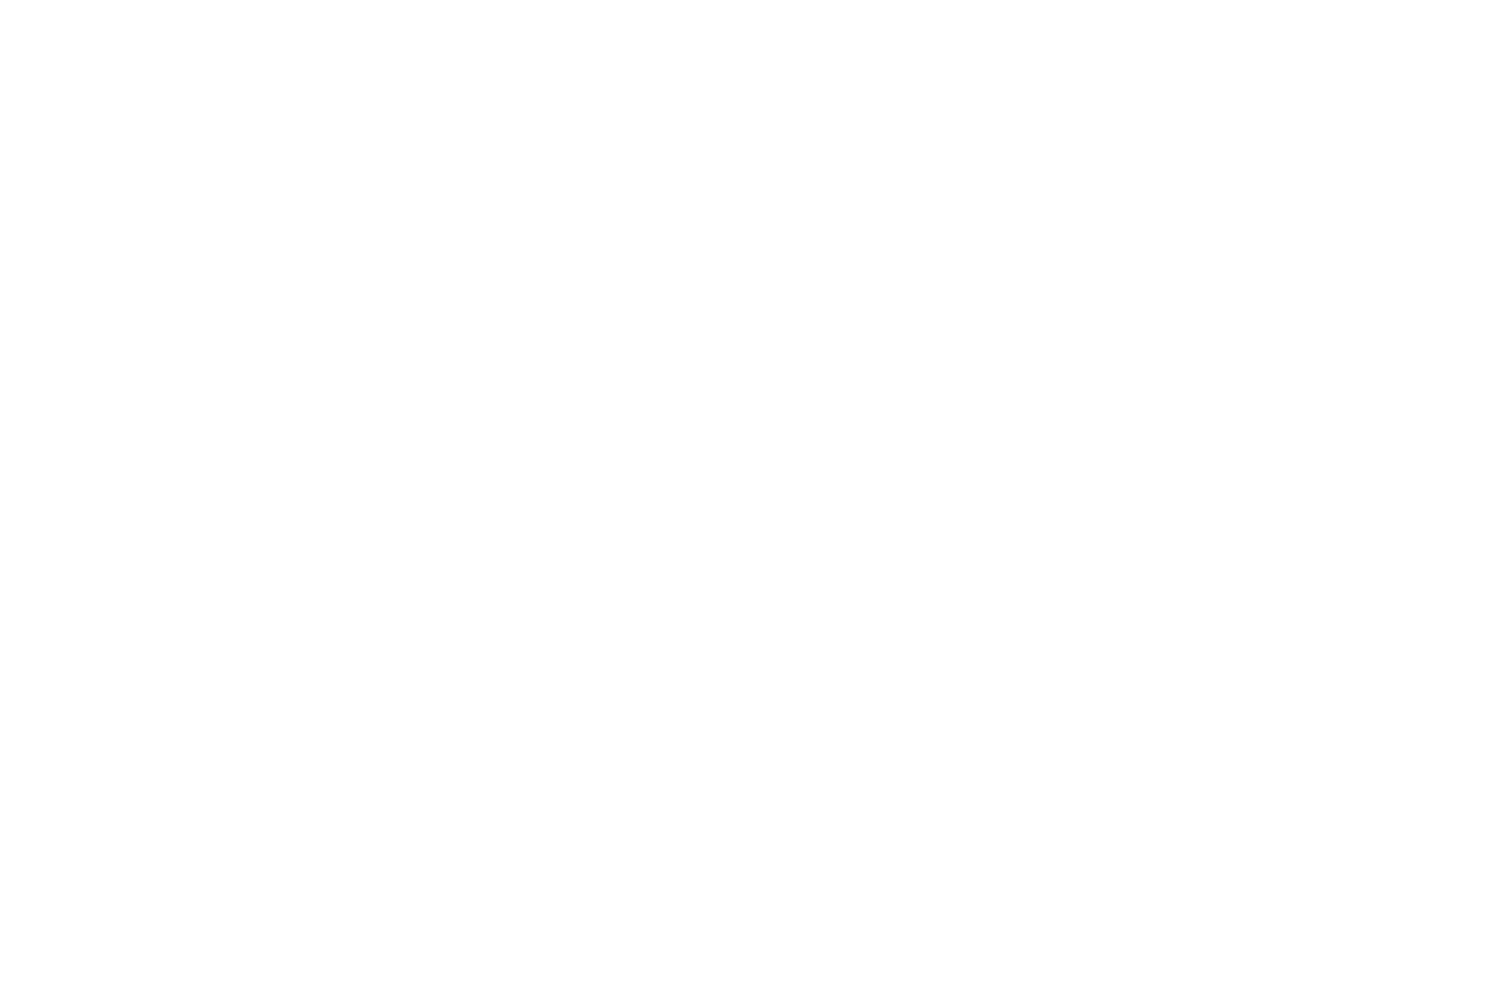 Mevy F. Rim Destinations